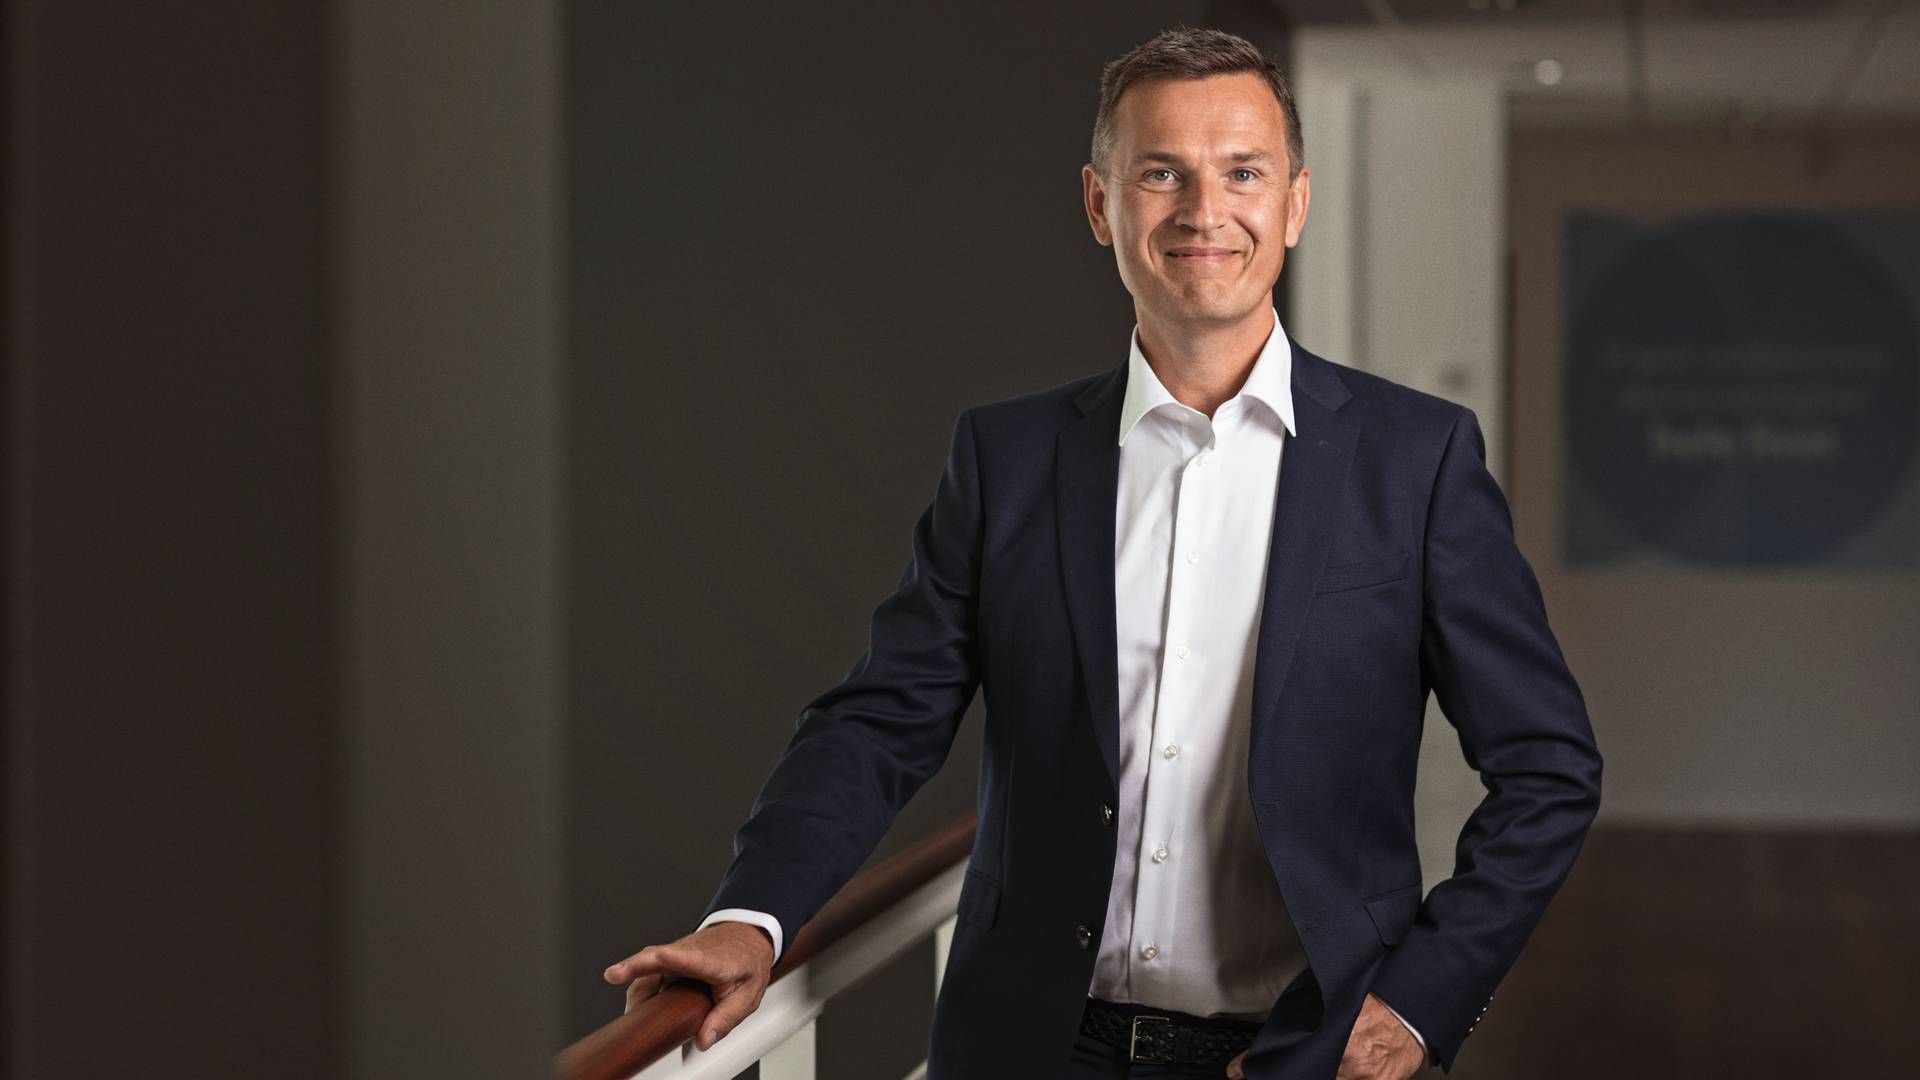 Ifølge Anders Schelde, investeringsdirektør i Akademikerpension, står Danske Bank overfor en stor opgave, hvis bankens nye strategi skal lykkedes. | Foto: PR/AkademikerPension